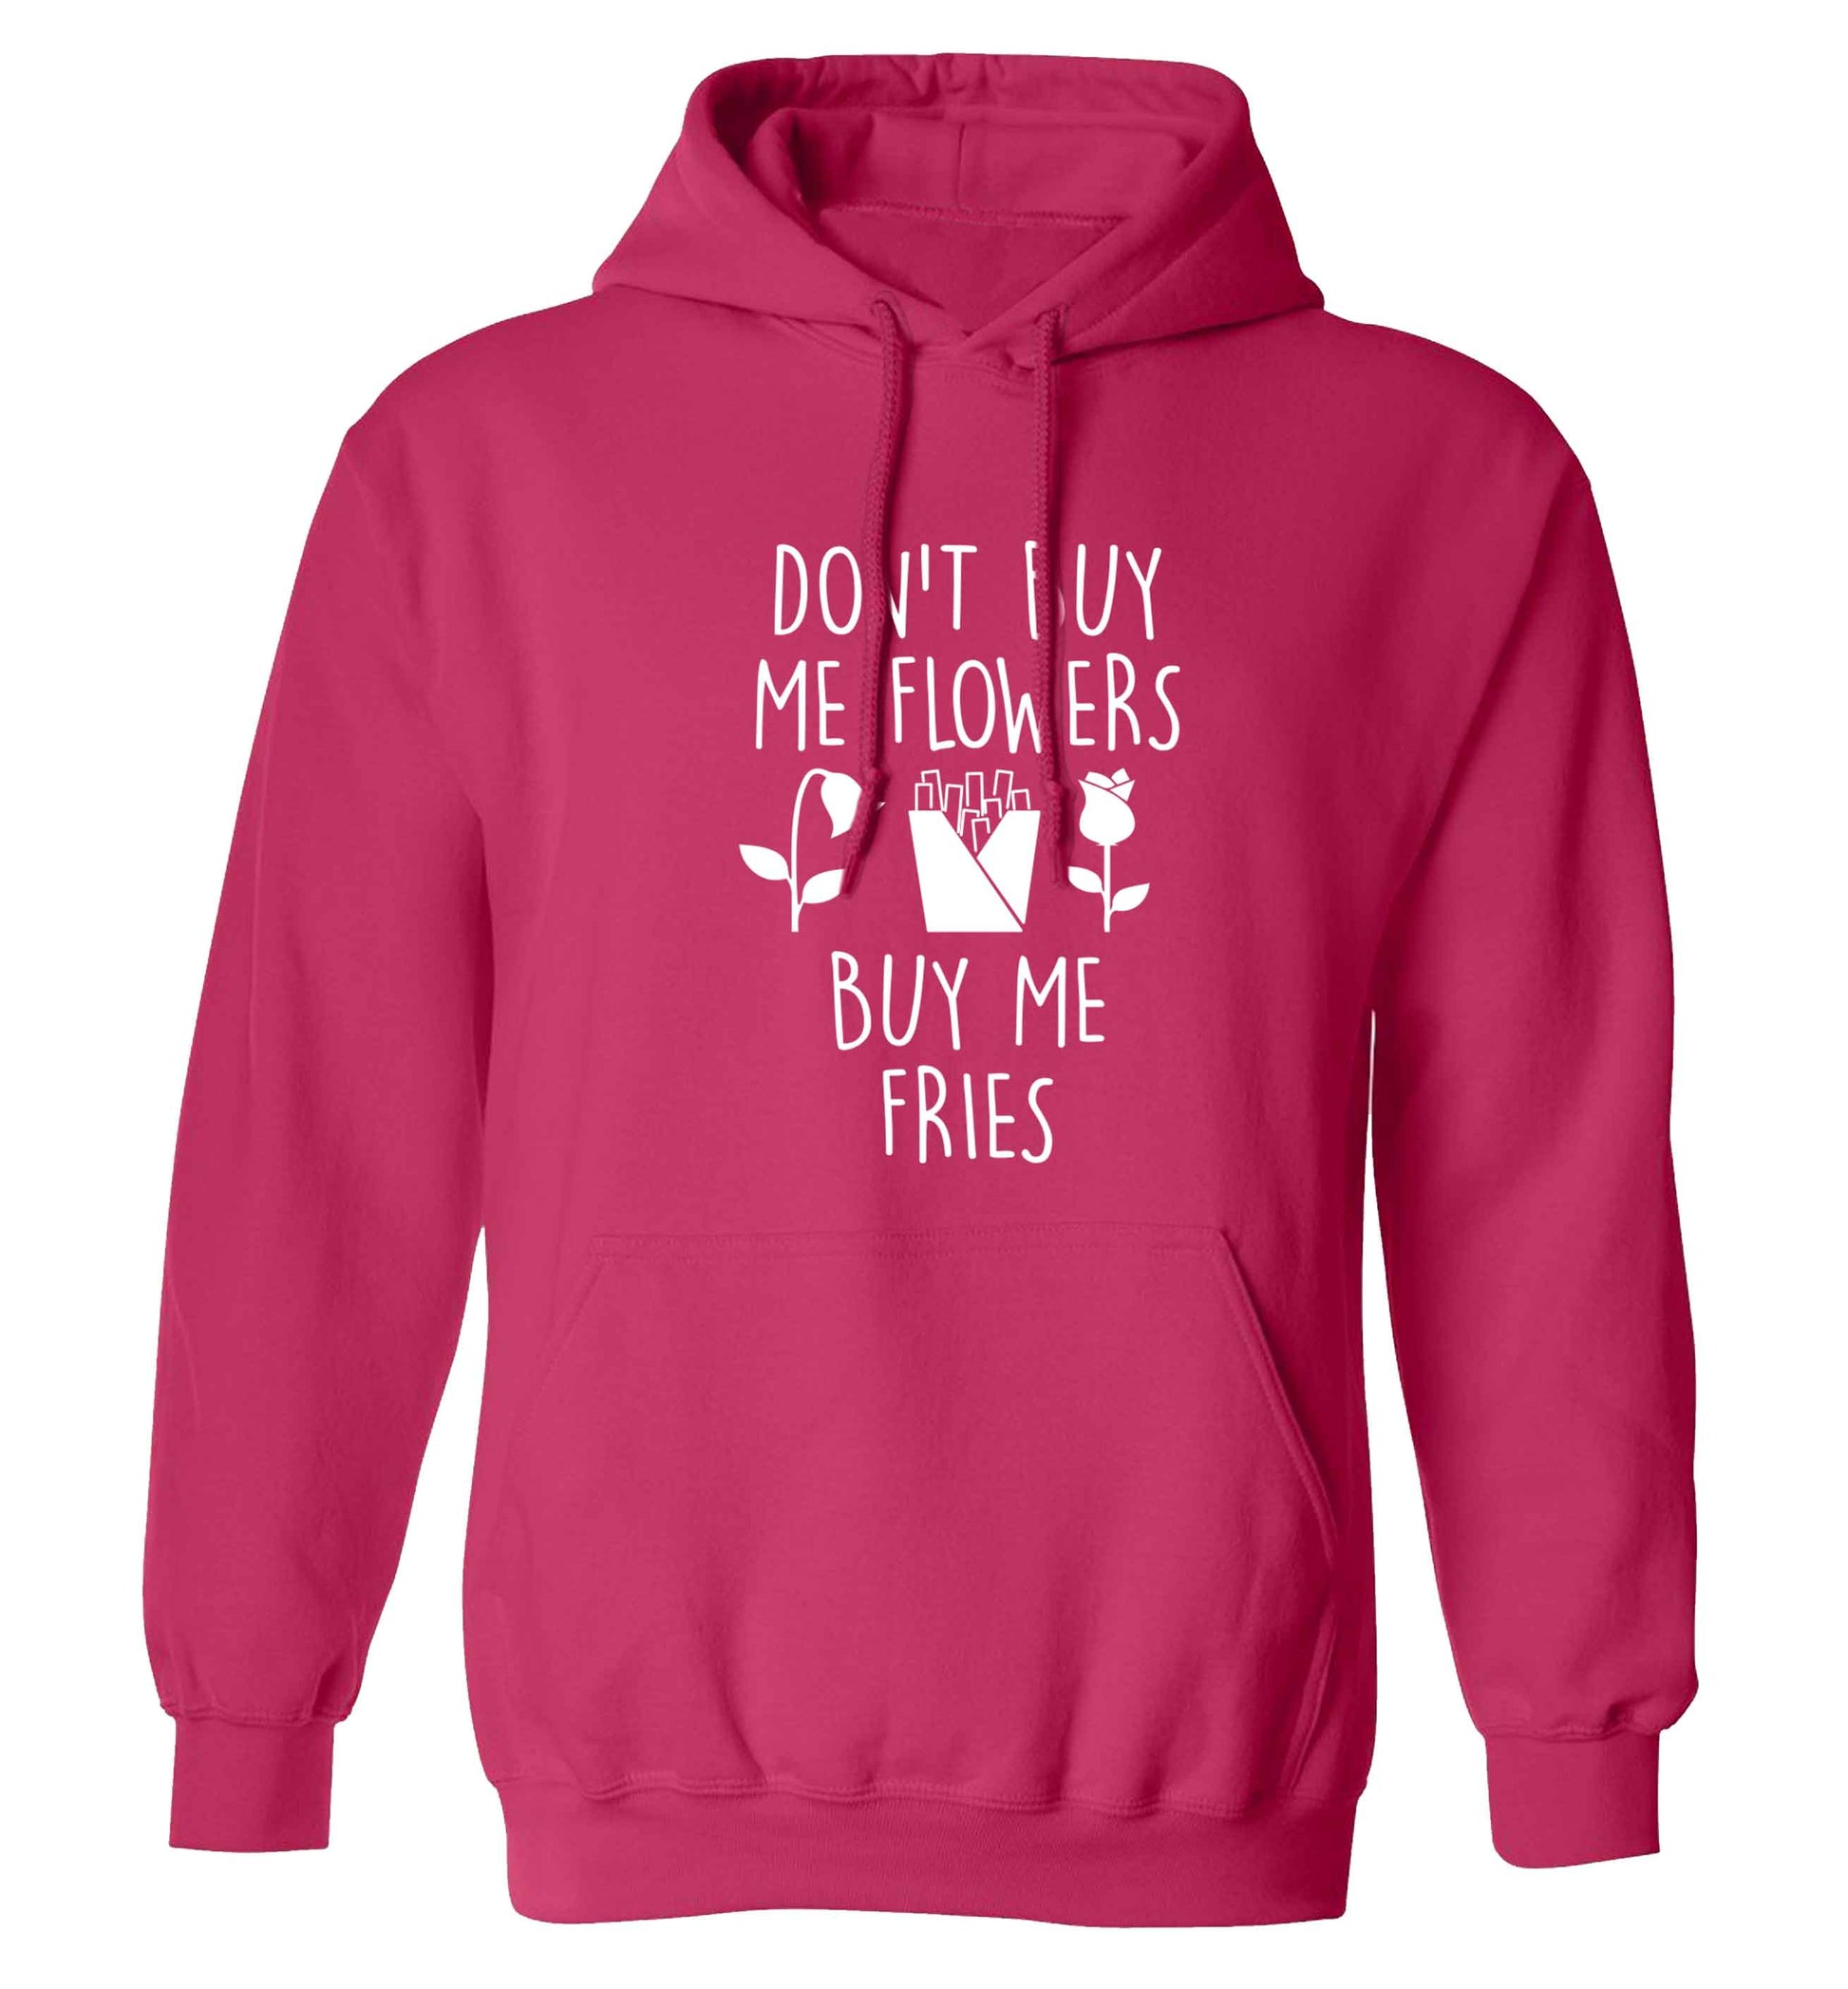 Don't buy me flowers buy me fries adults unisex pink hoodie 2XL